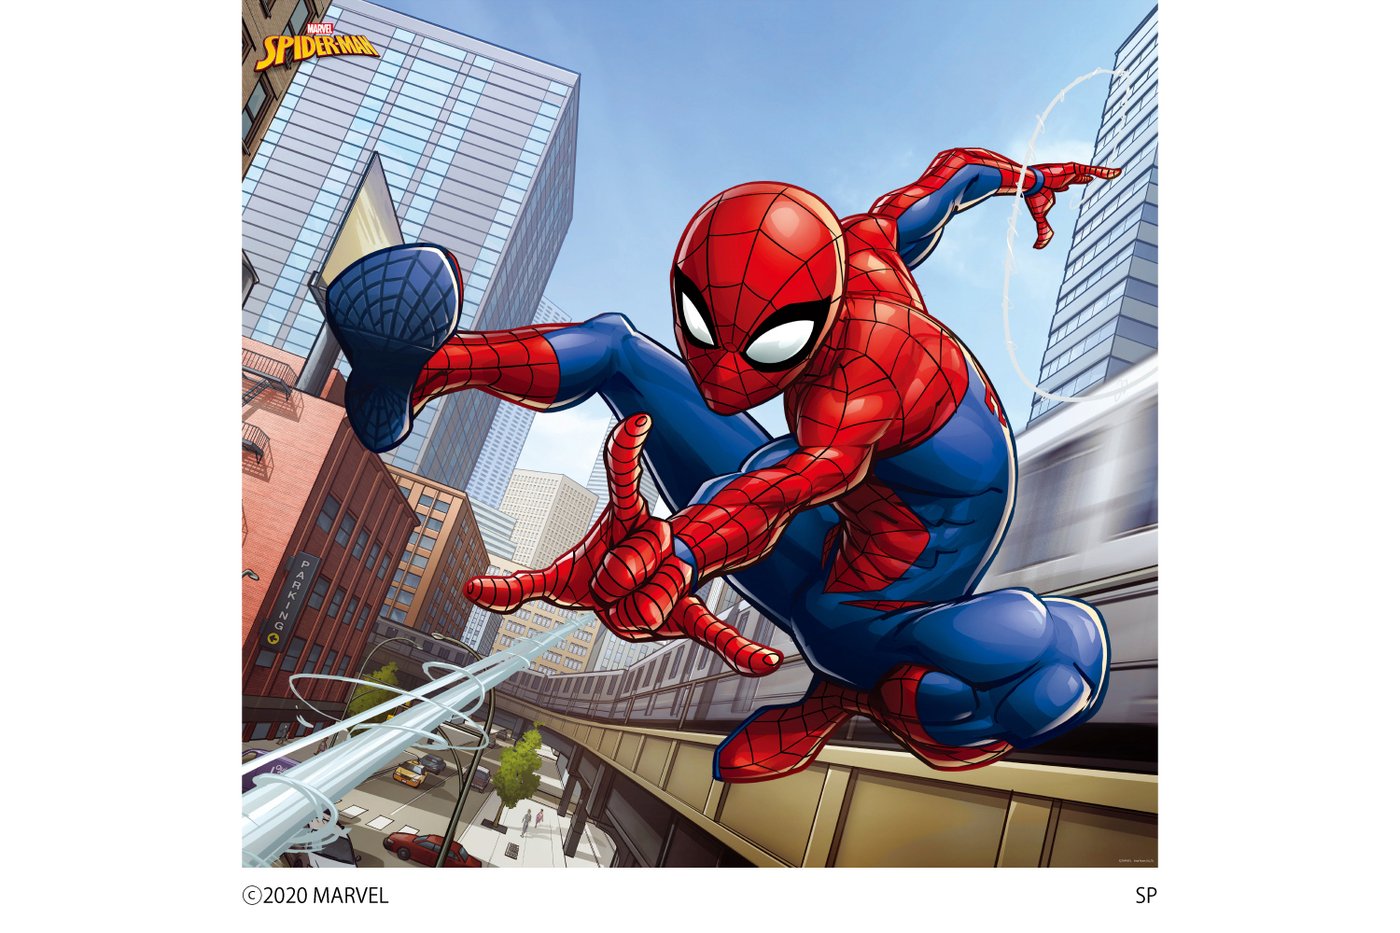 日本全国送料無料 Marvel マーベル Spider Man 壁紙素材ウォールステッカー スパイダーマン 6シートタイプ Wall Paper M027 6 プリテック Fucoa Cl